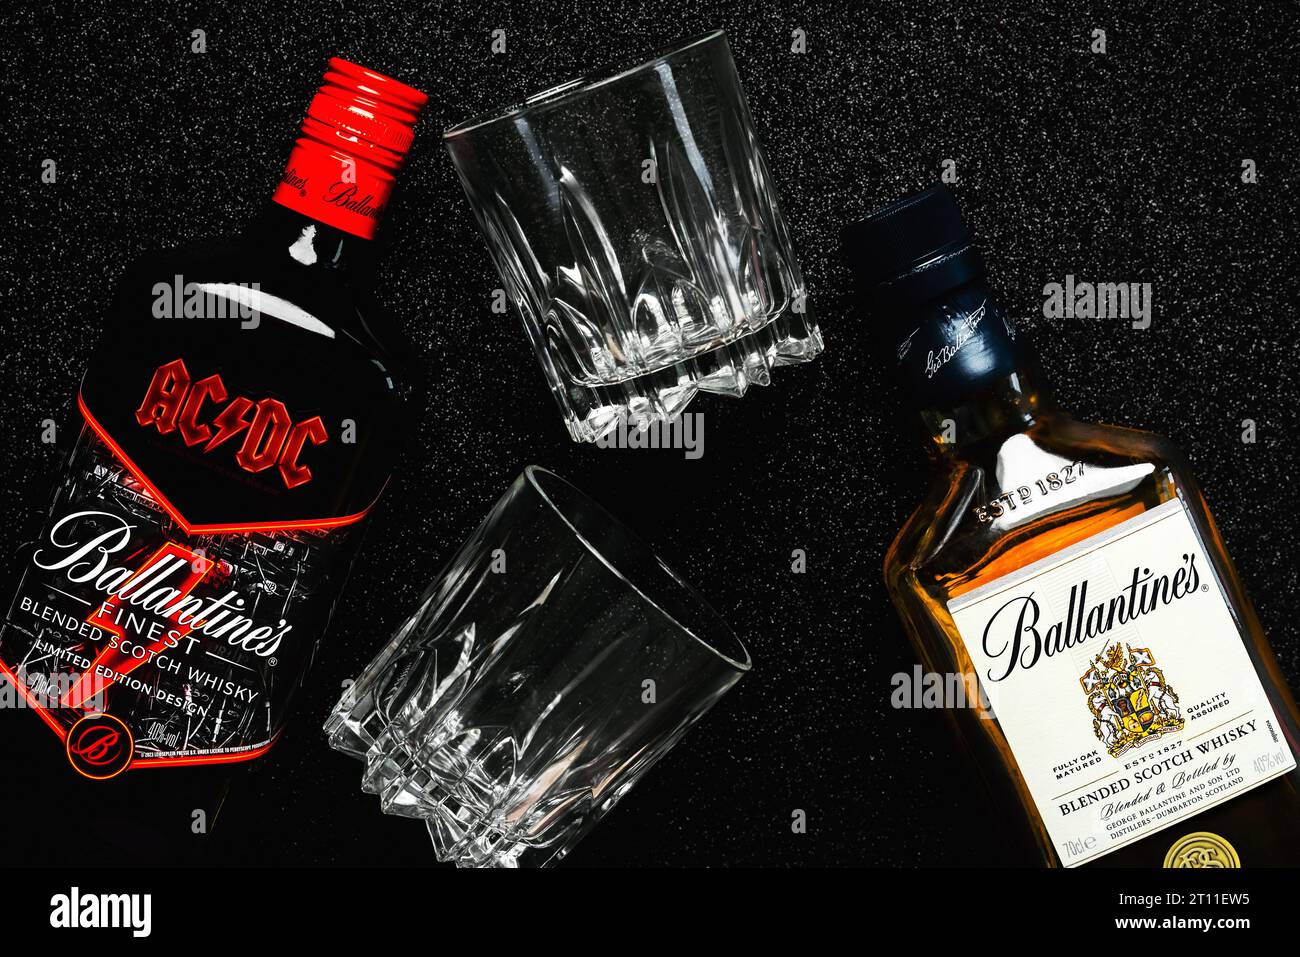 Ballantine's Scotch Whiskey Flaschenspezial der legendären Rockband ACDC und Ballantine's Blended Scotch Whisky mit zwei Gläsern Whisky auf b Stockfoto